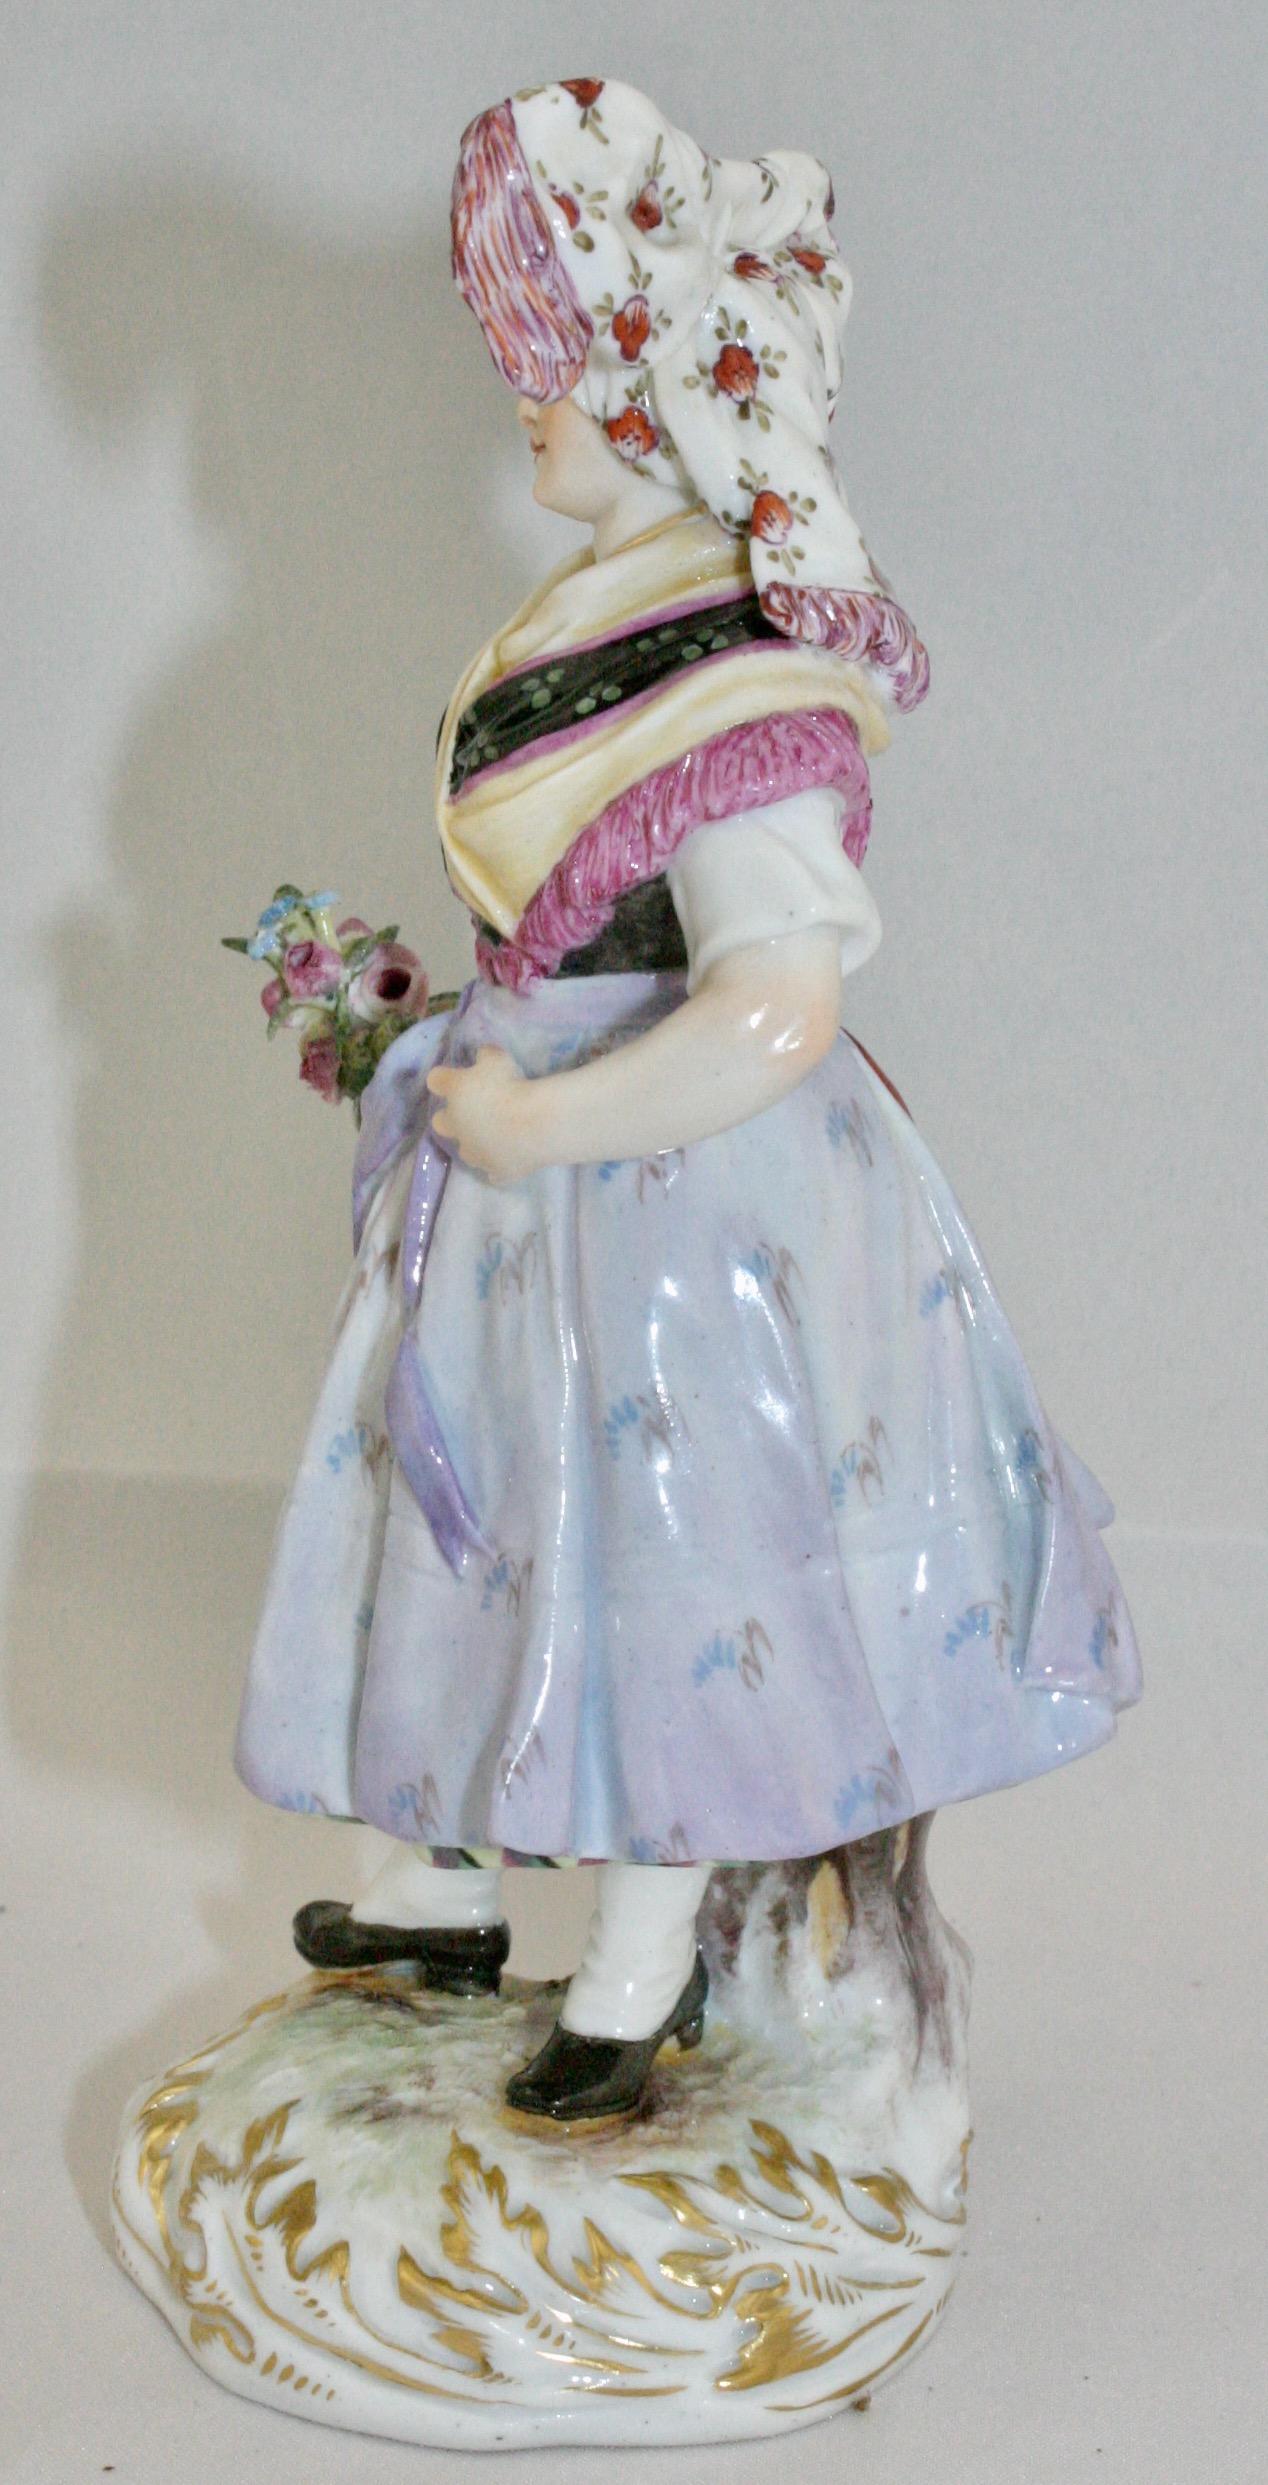 Meissener Figur einer blumenhaltenden Lausitzerin in Tracht, um 1887. Dieses Modell wurde von Hugo Speiler entworfen. Sie ist mit der Meissener Marke, der Modellnummer Q190d, 